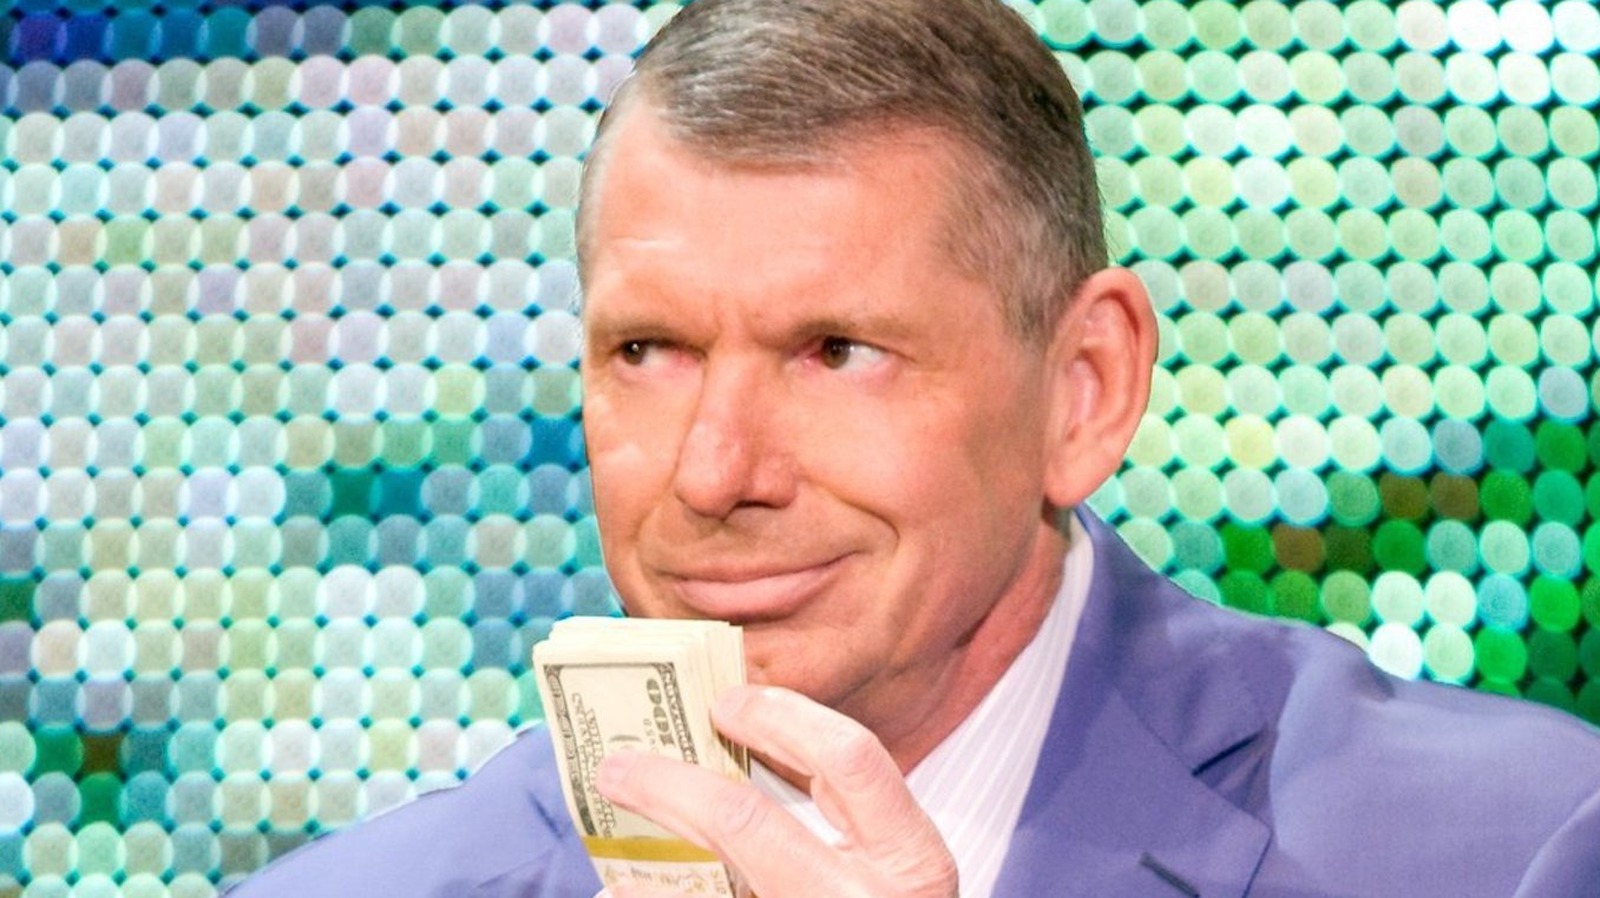 Según los informes, Vince McMahon hizo varios intentos para romper el nuevo día en la WWE